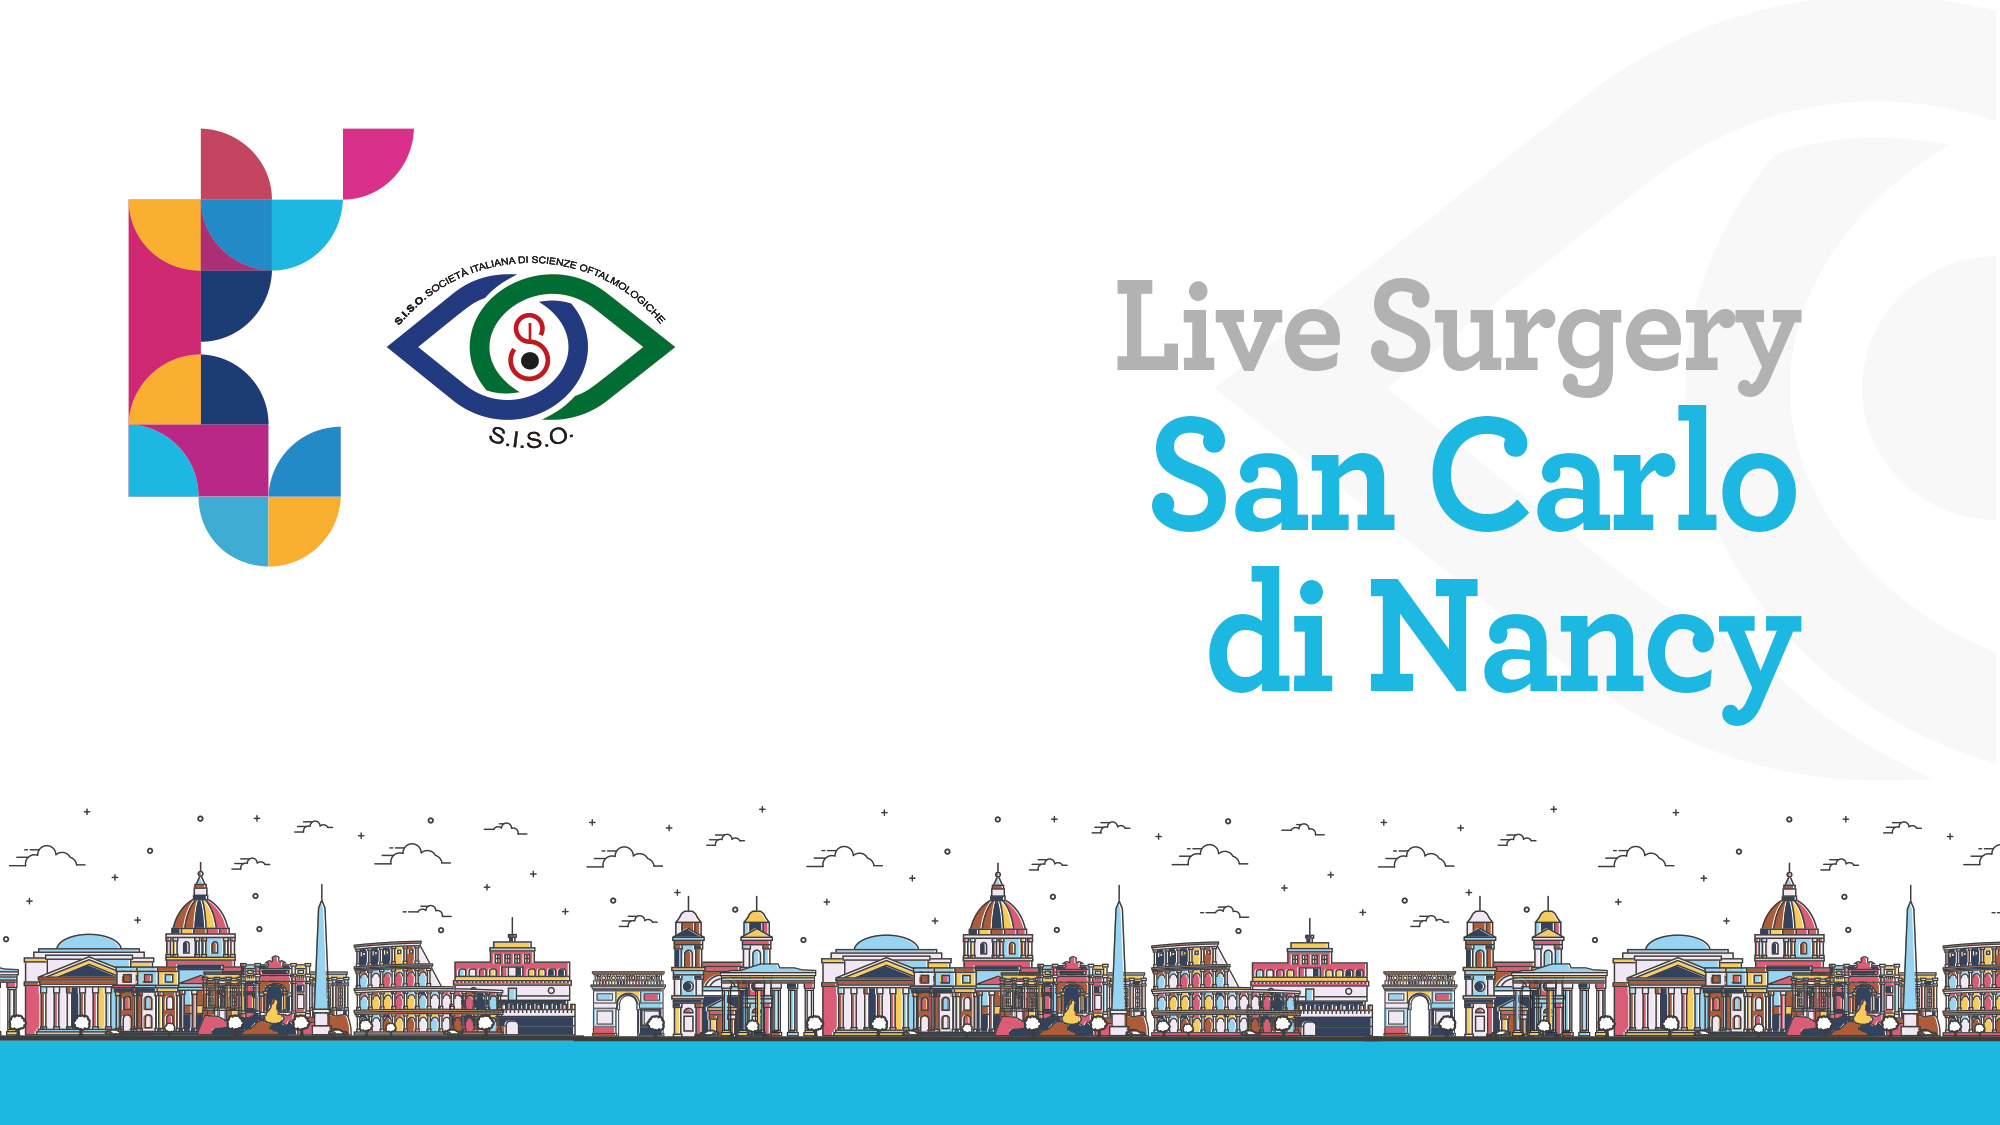 Live Surgery San Carlo di Nancy